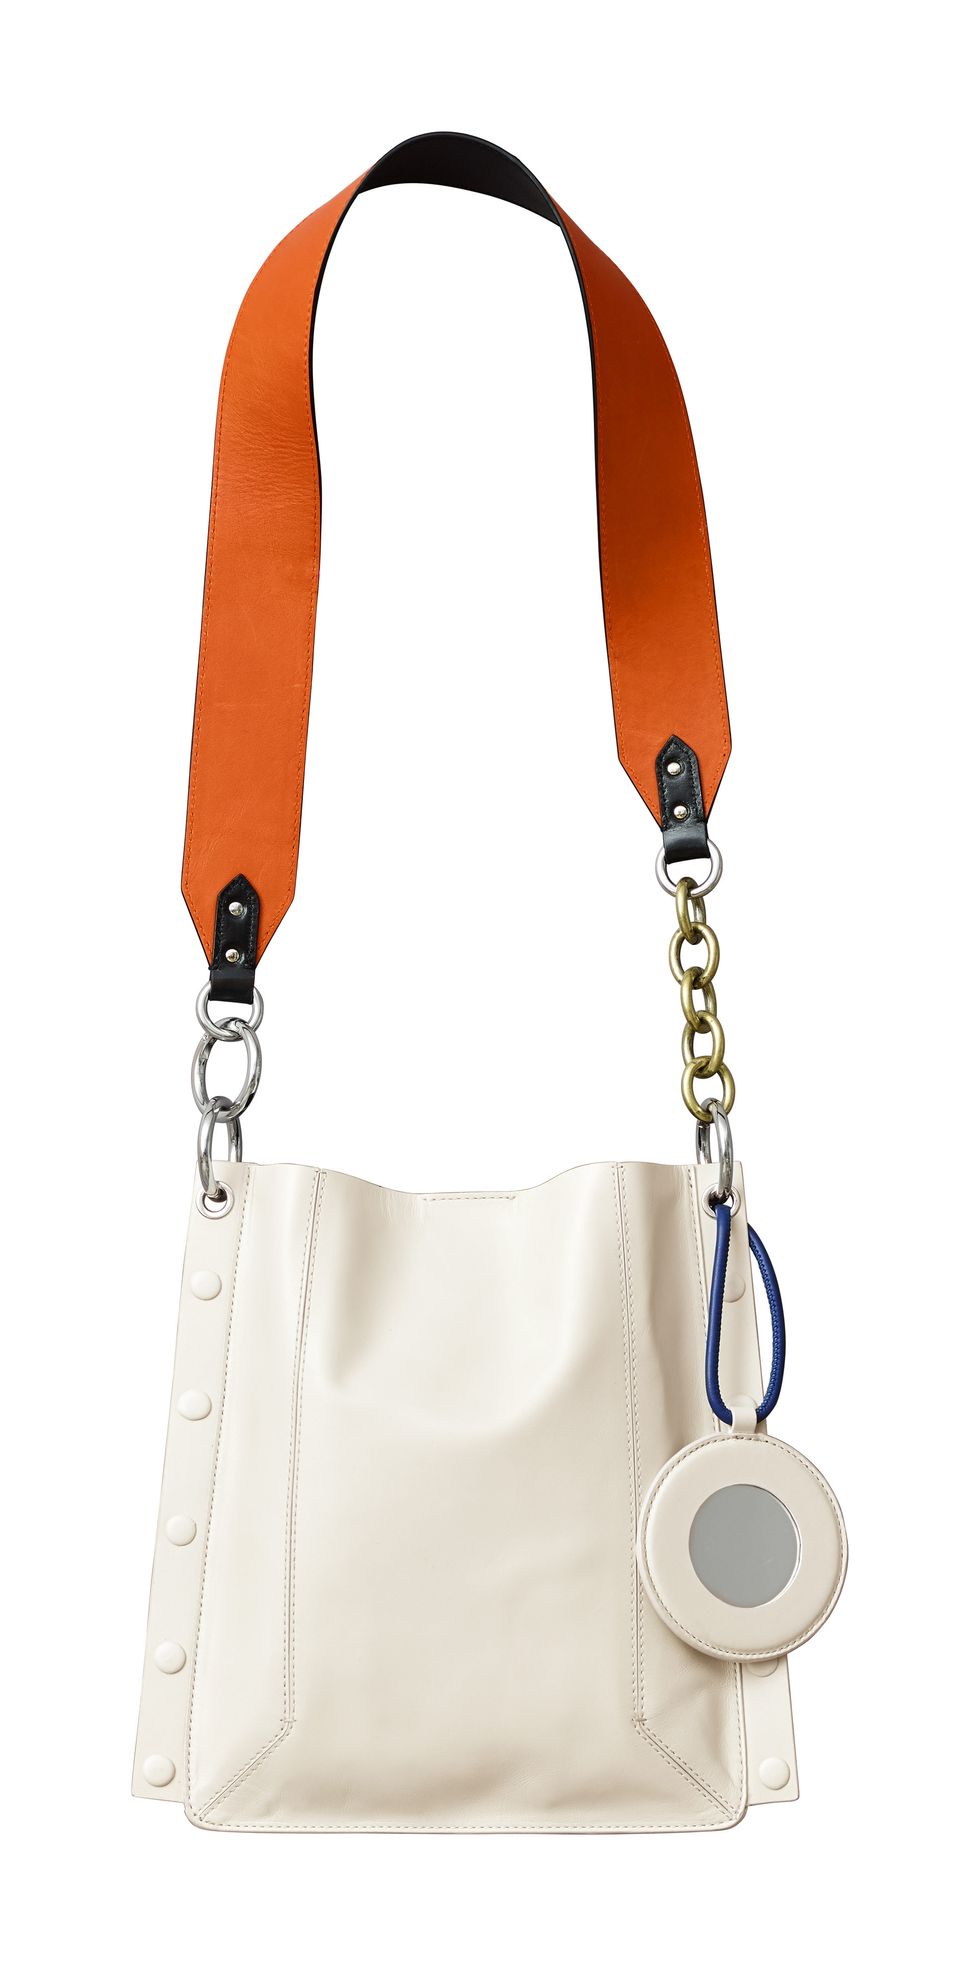 Bag, Handbag, Fashion accessory, Orange, Shoulder bag, Tan, Hobo bag, Leather, Beige, Leash, 